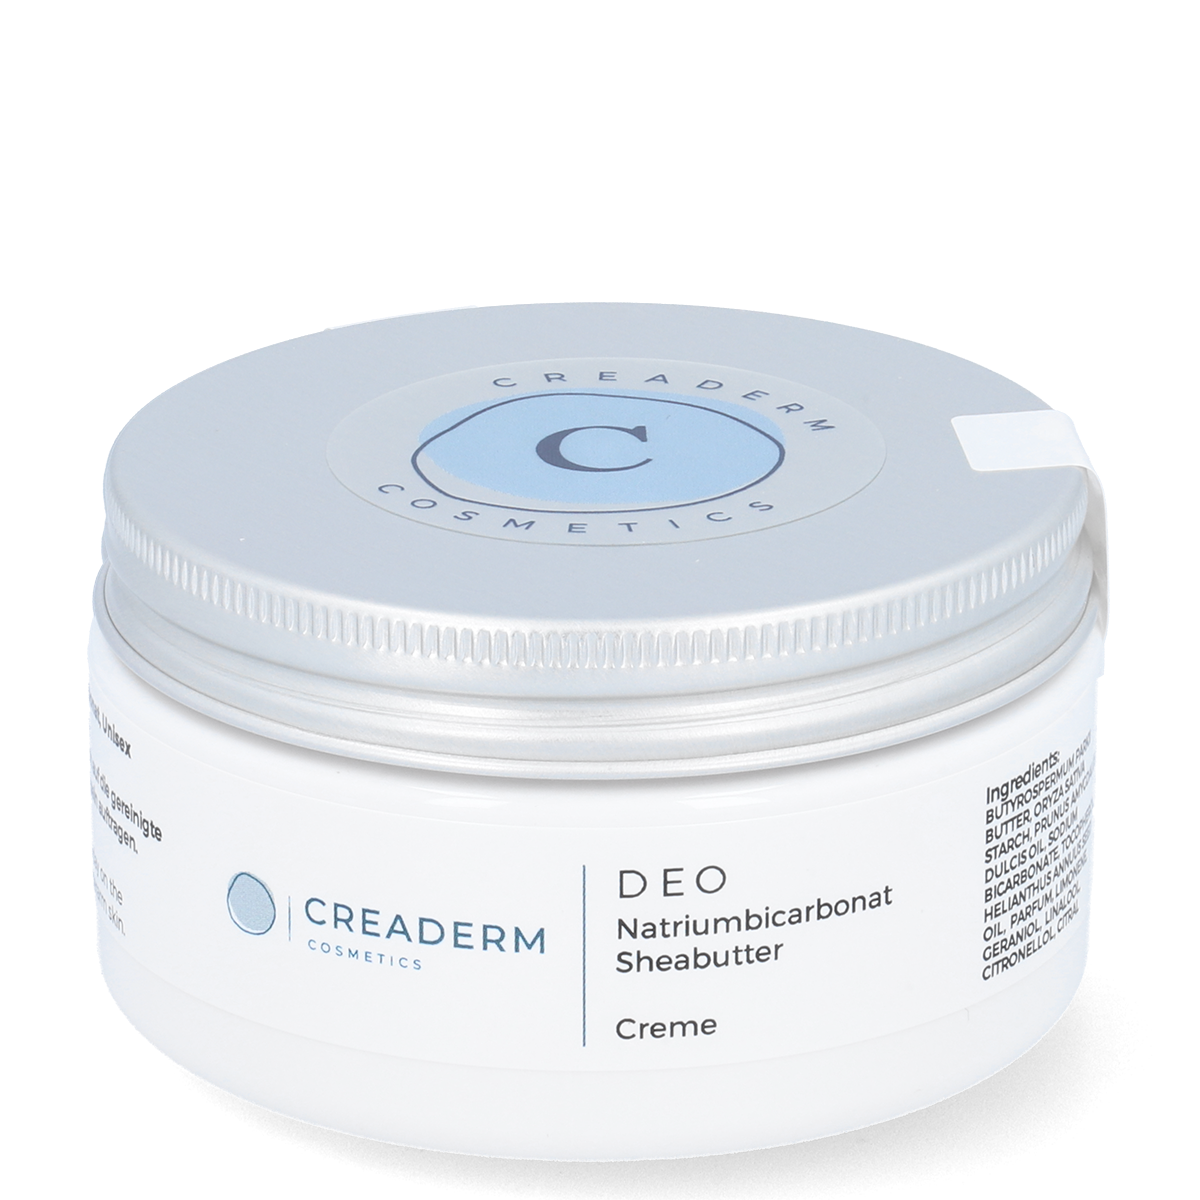 Creaderm Deodorant Cream